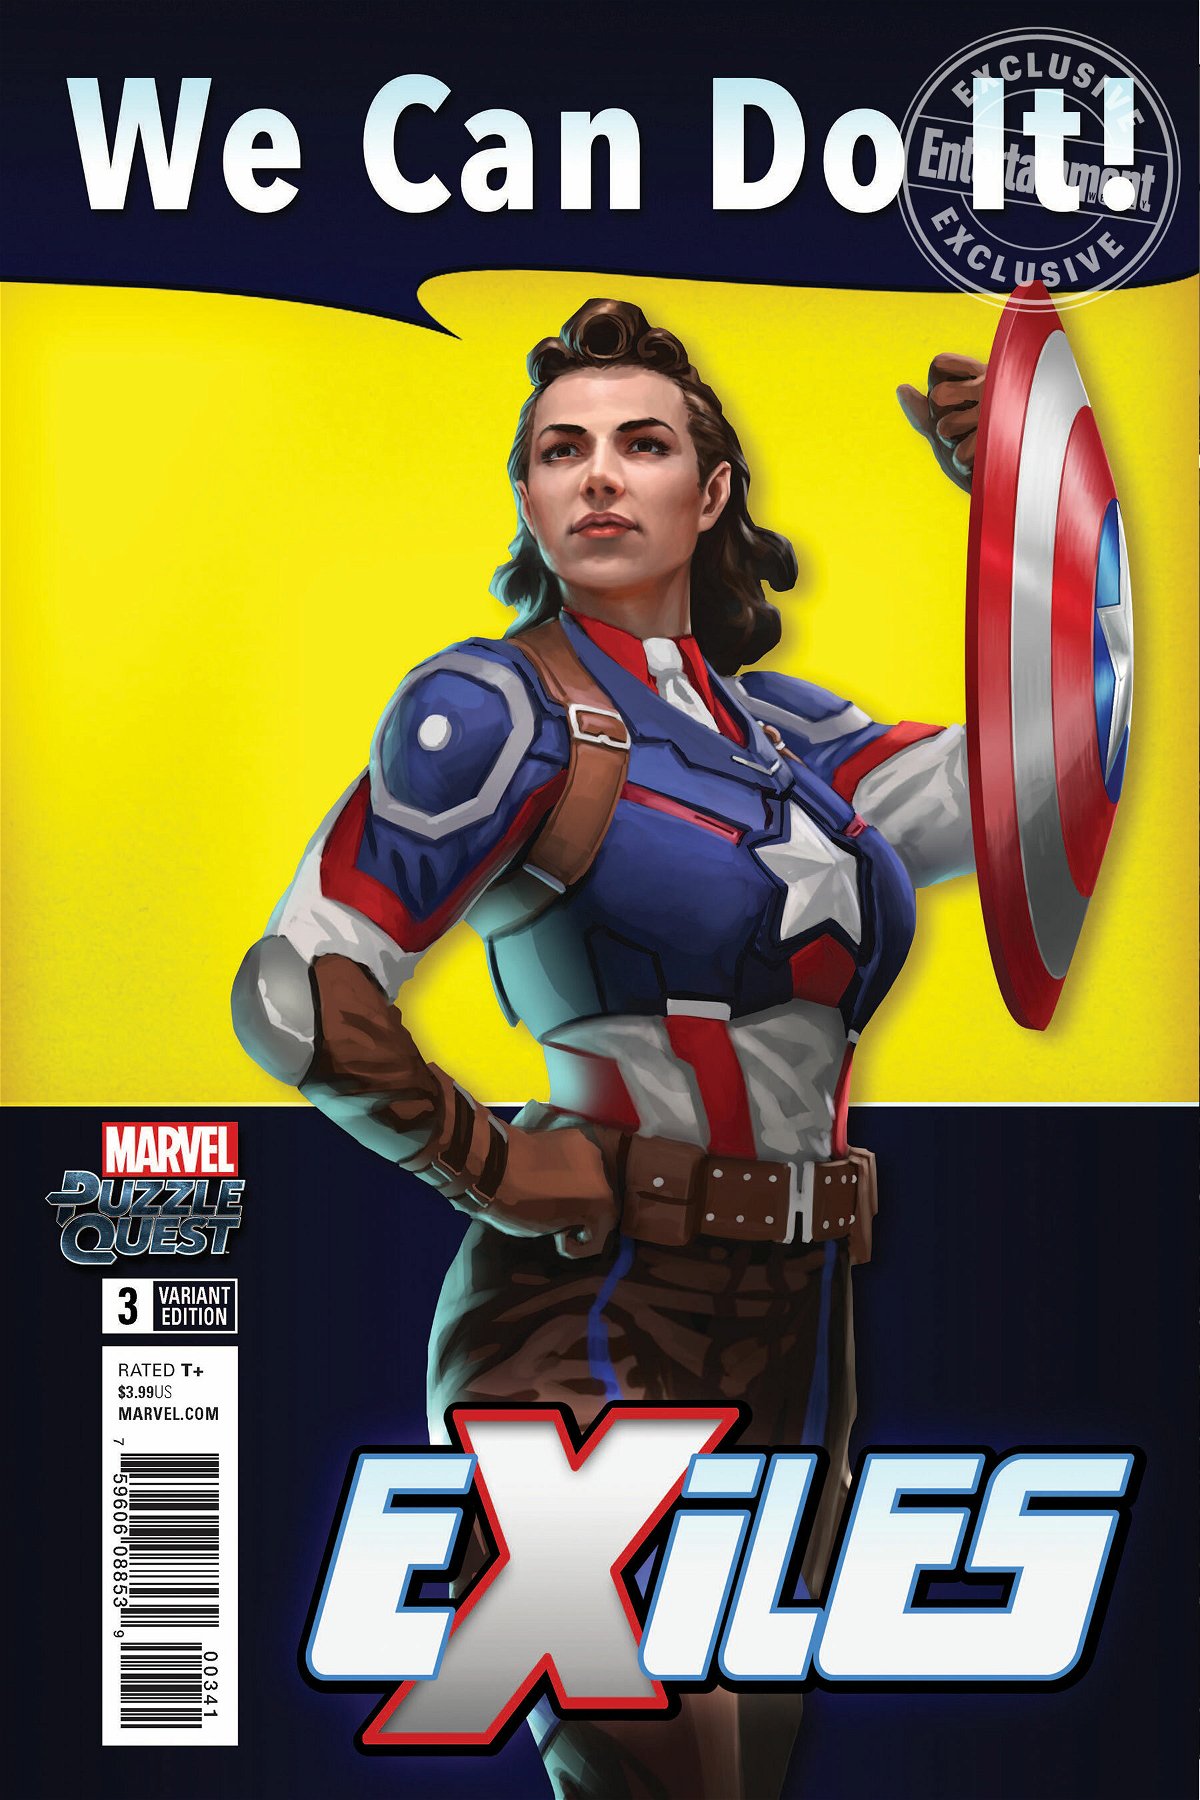 La copertina del terzo numero della serie a fumetti Marvel Exiles con Peggy Carter versione Captain America